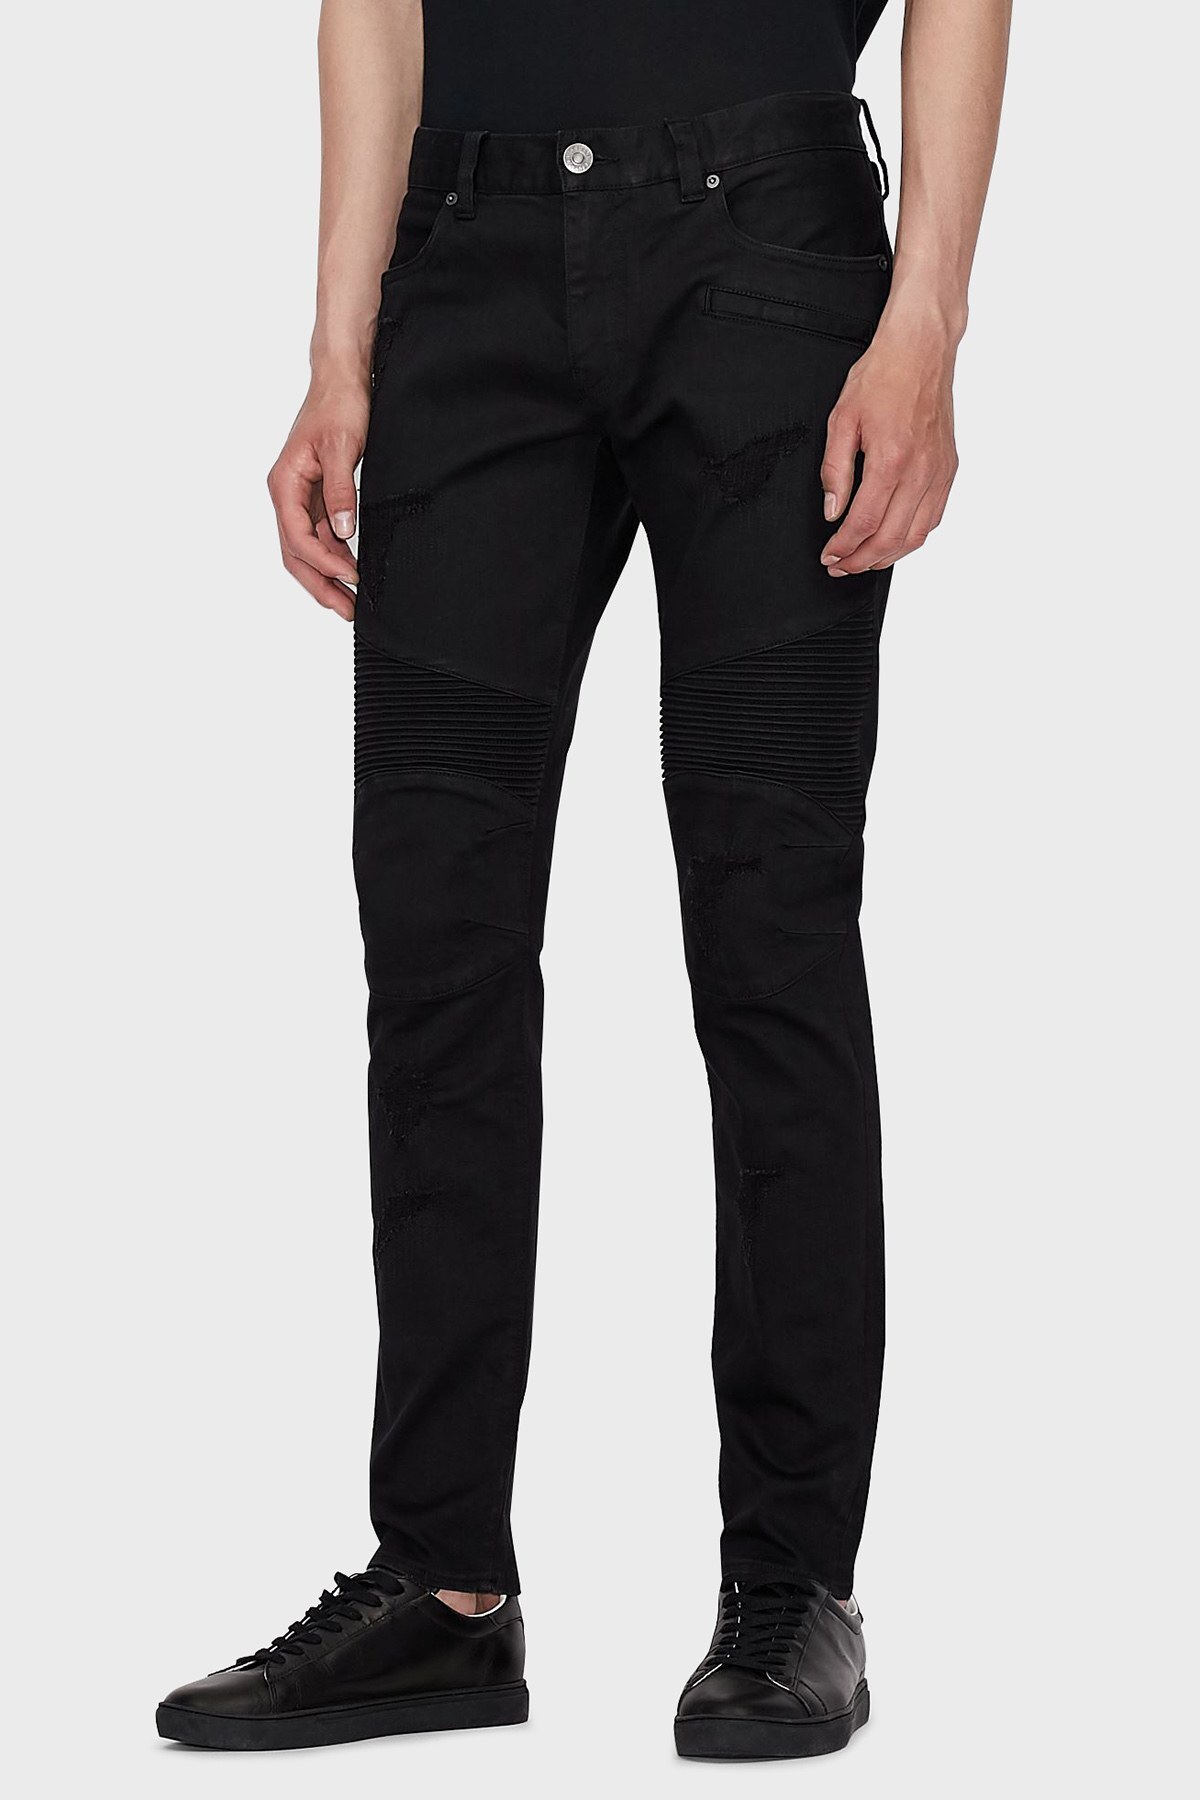 Armani Exchange Pamuklu Skinny Fit J27 Jeans Erkek Kot Pantolon 6KZJ27 Z1AAZ 1200 SİYAH